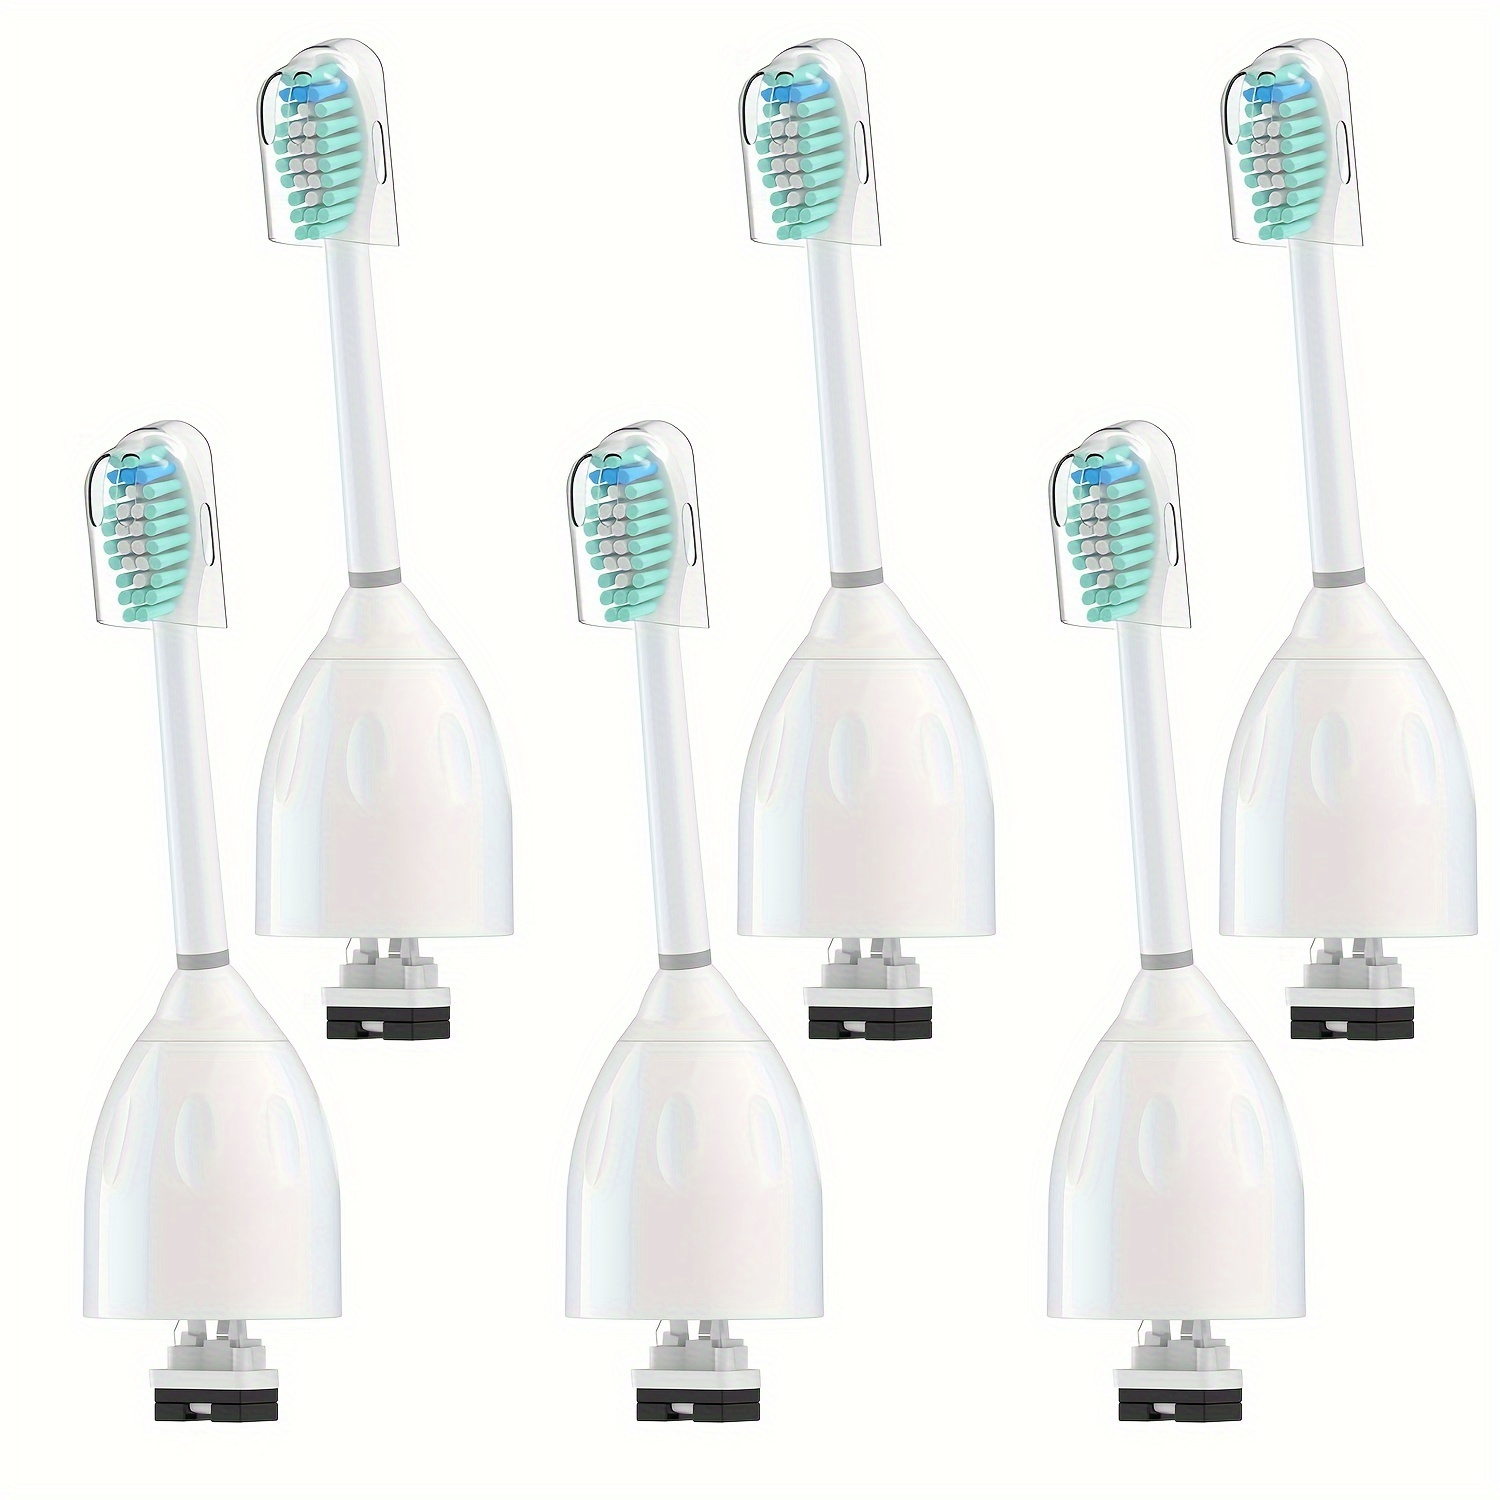  Cabezales de repuesto para cepillos de dientes compatibles con  Braun Oral b 7000/Pro 1000/9600/5000/3000/8000/Genius y cepillo de dientes  eléctrico inteligente, 16 piezas (blanco) : Salud y Hogar